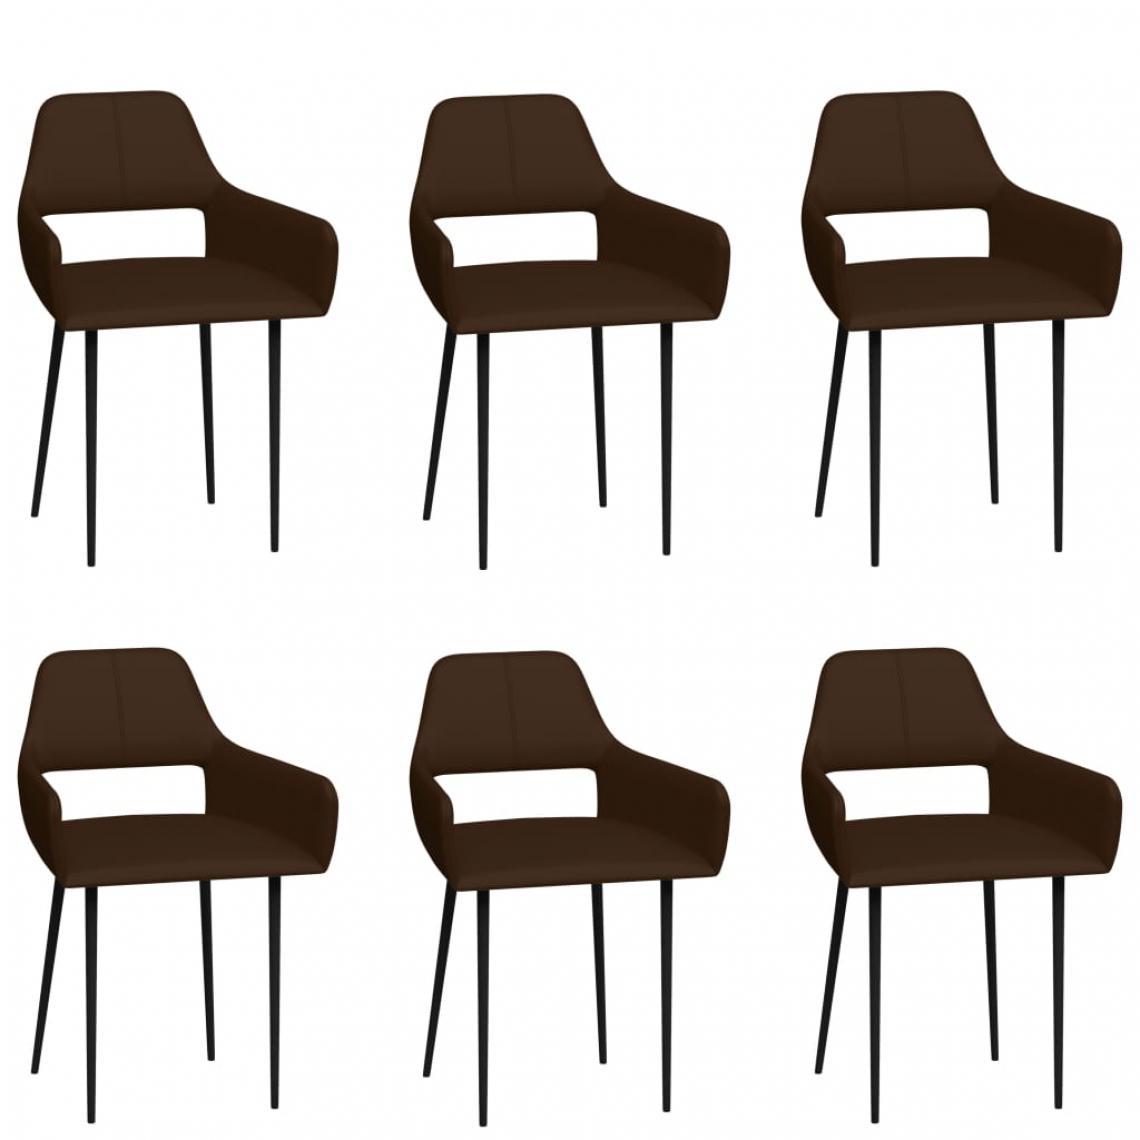 Icaverne - Inedit Fauteuils et chaises serie Brazzaville Chaises de salle à manger 6 pcs Marron Similicuir - Chaises